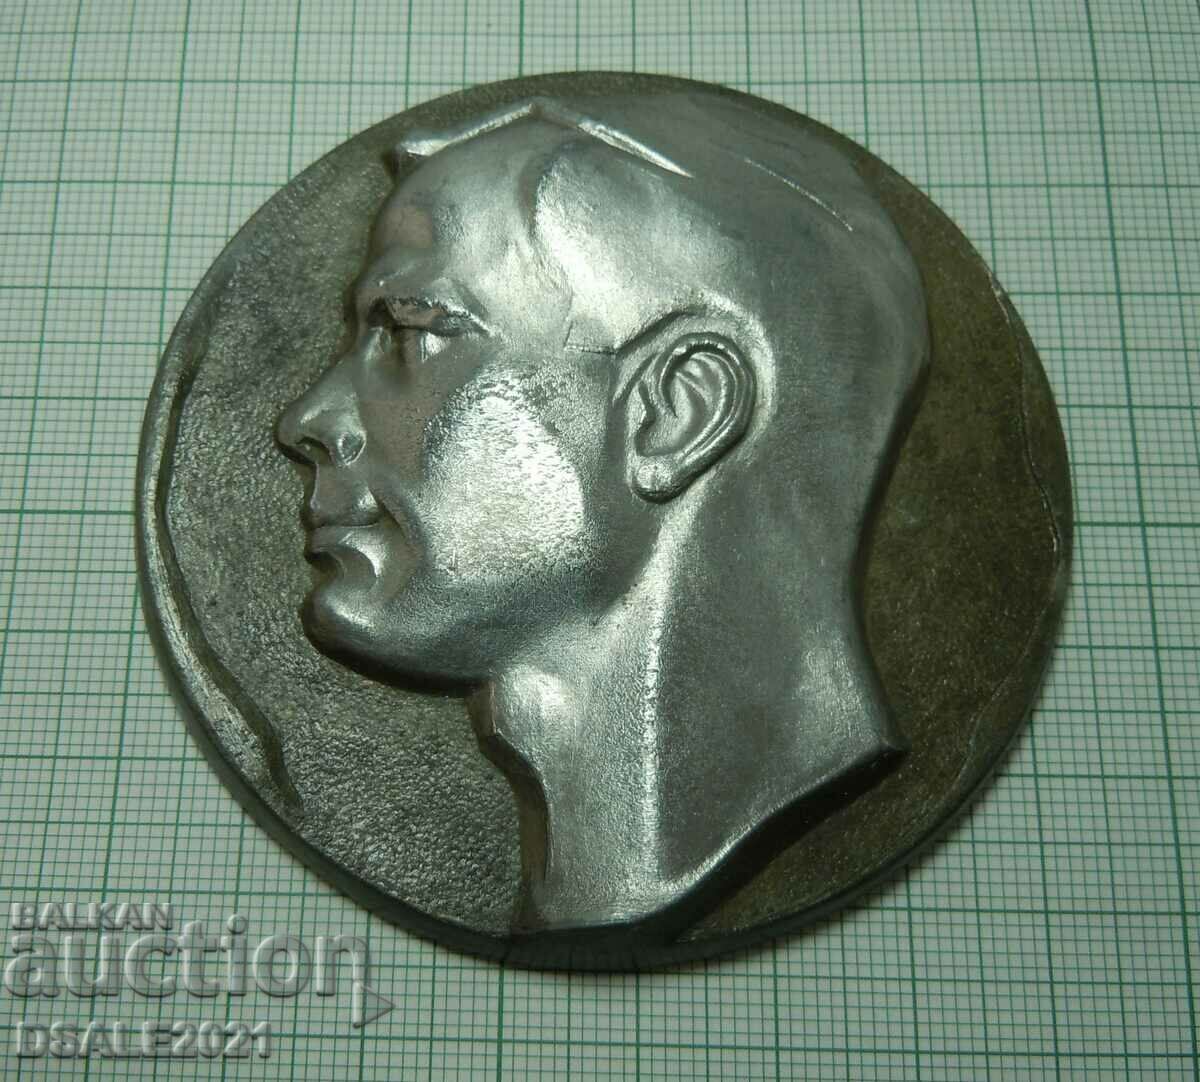 КОСМОС 1961 Ю. Гагарин космонавт СССР плакет настолен медал